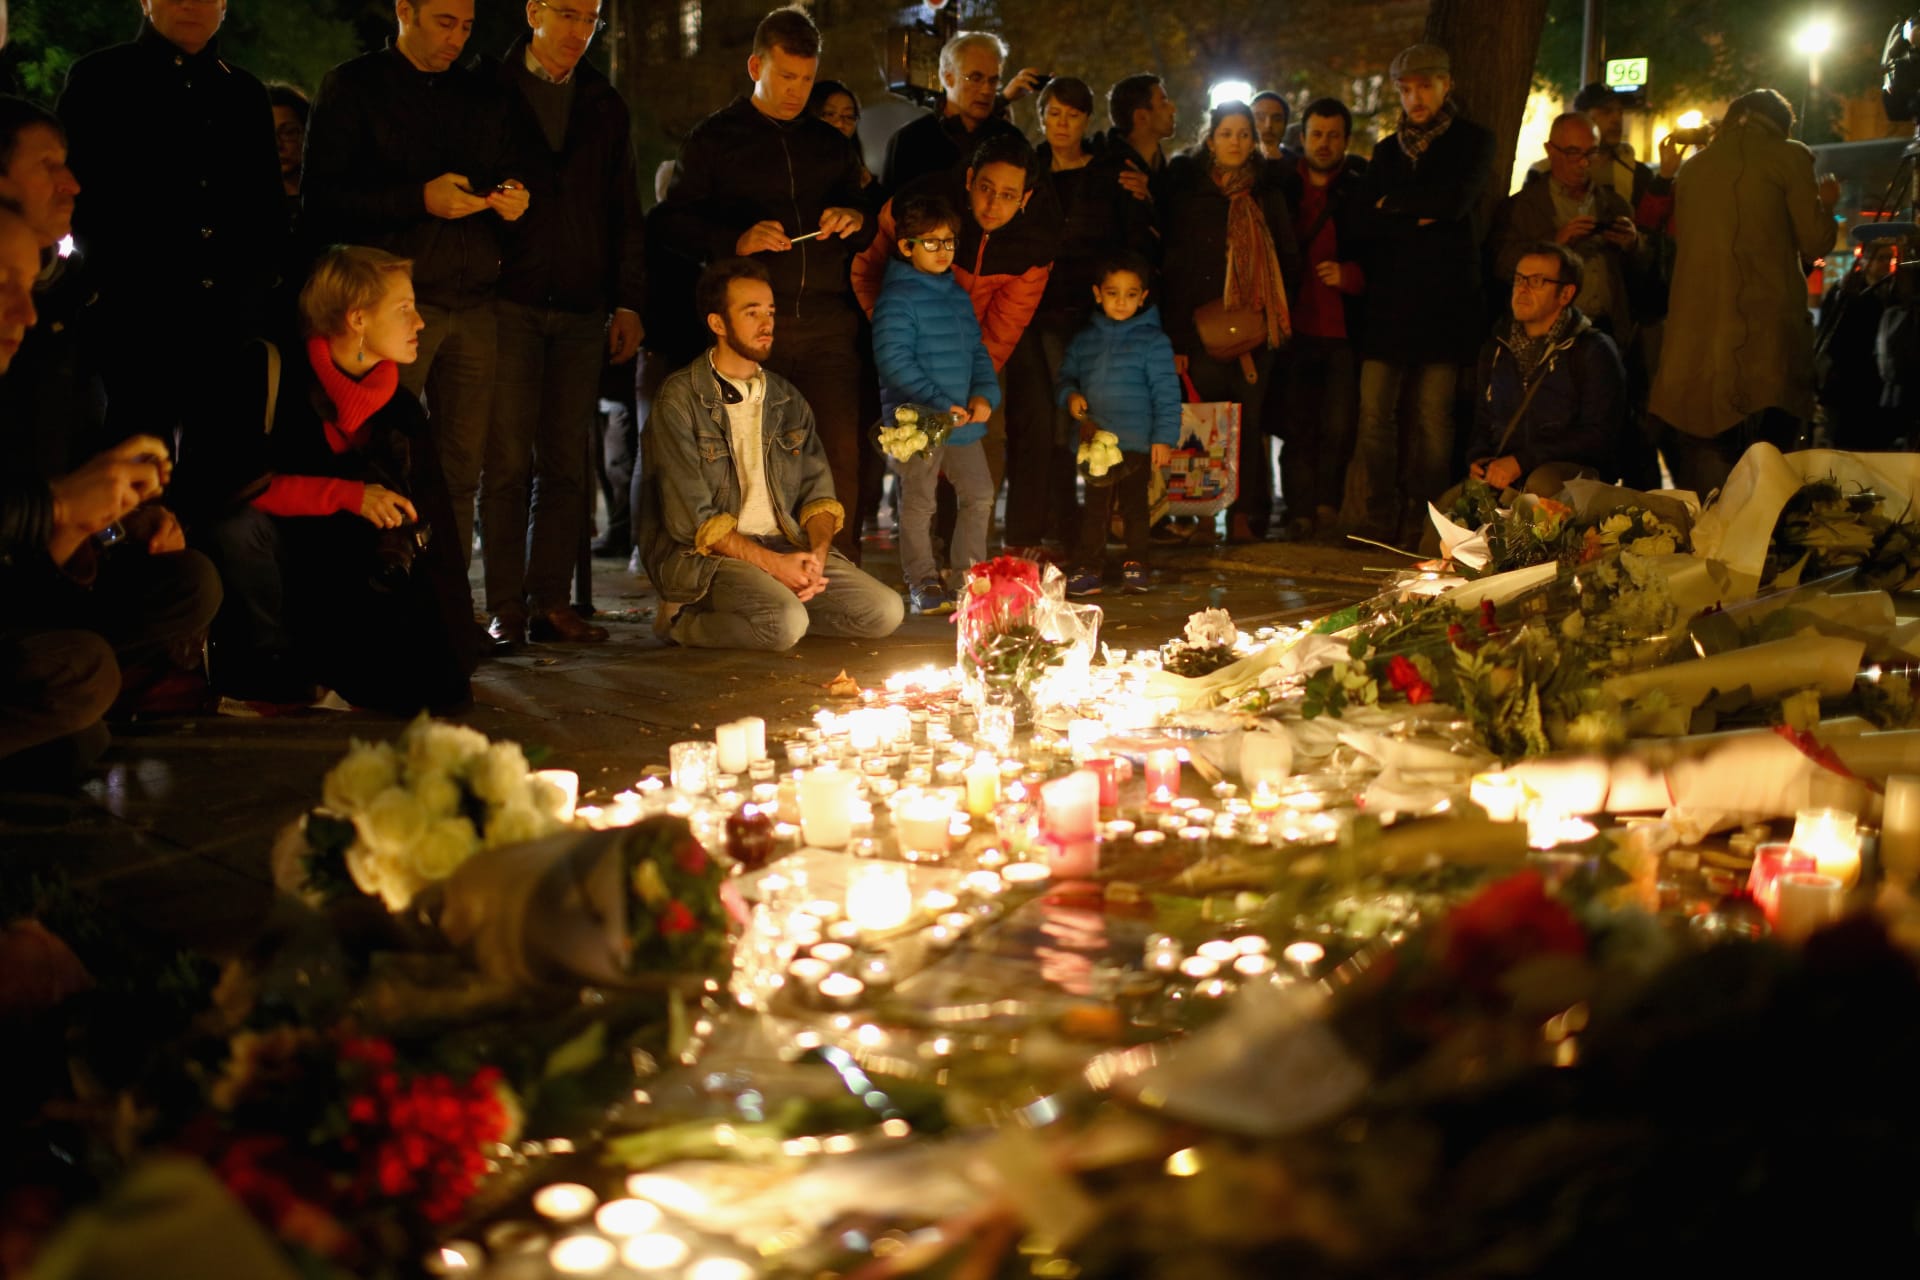 بعد مقتل 89 شخصا فيه على يد عناصر "داعش".. مسرح البتاكلان يعود للحياة بنفس شهر وقوع هجمات باريس